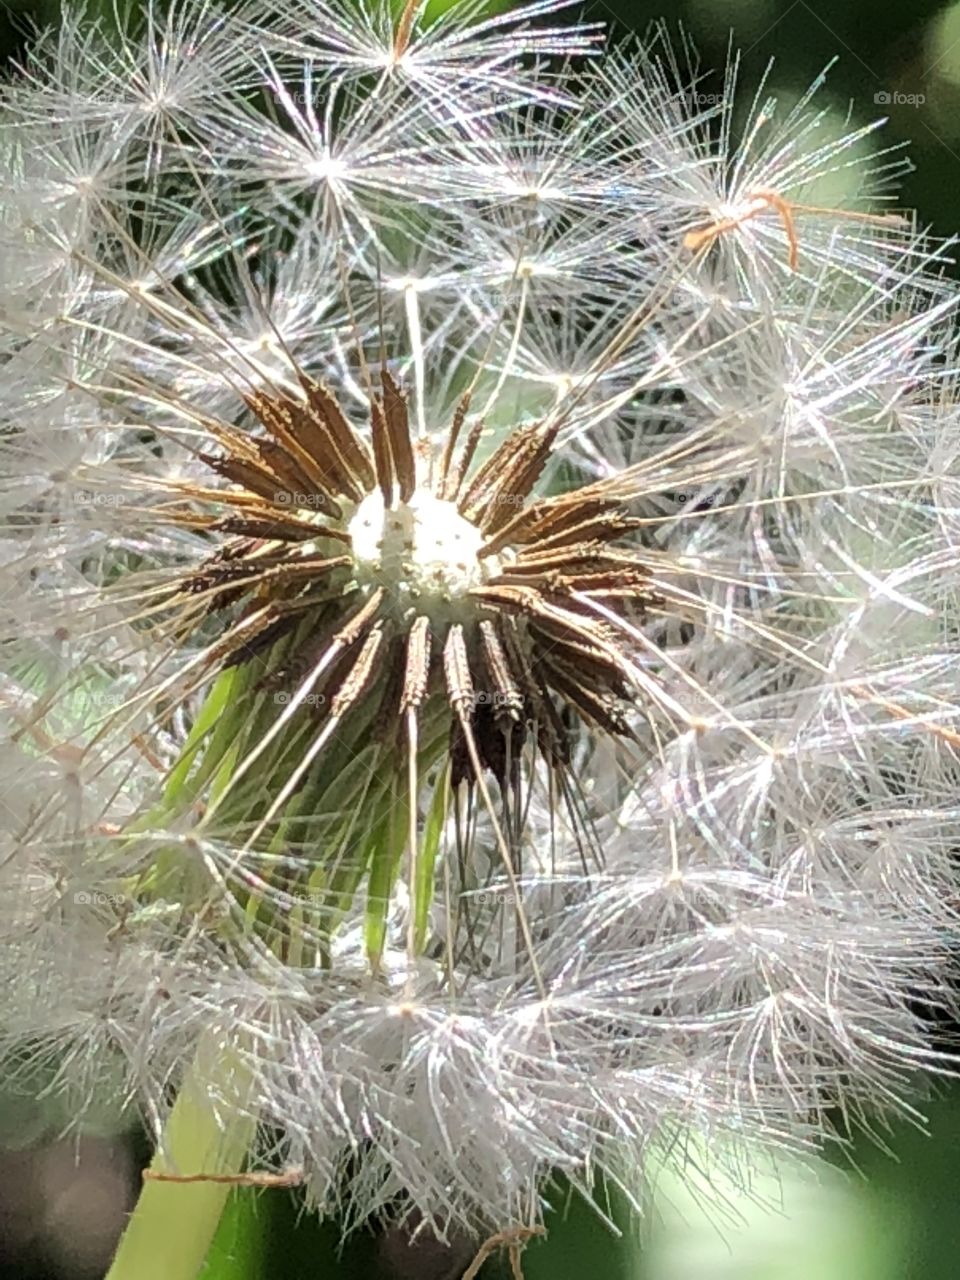 Dandelion parachute seeds